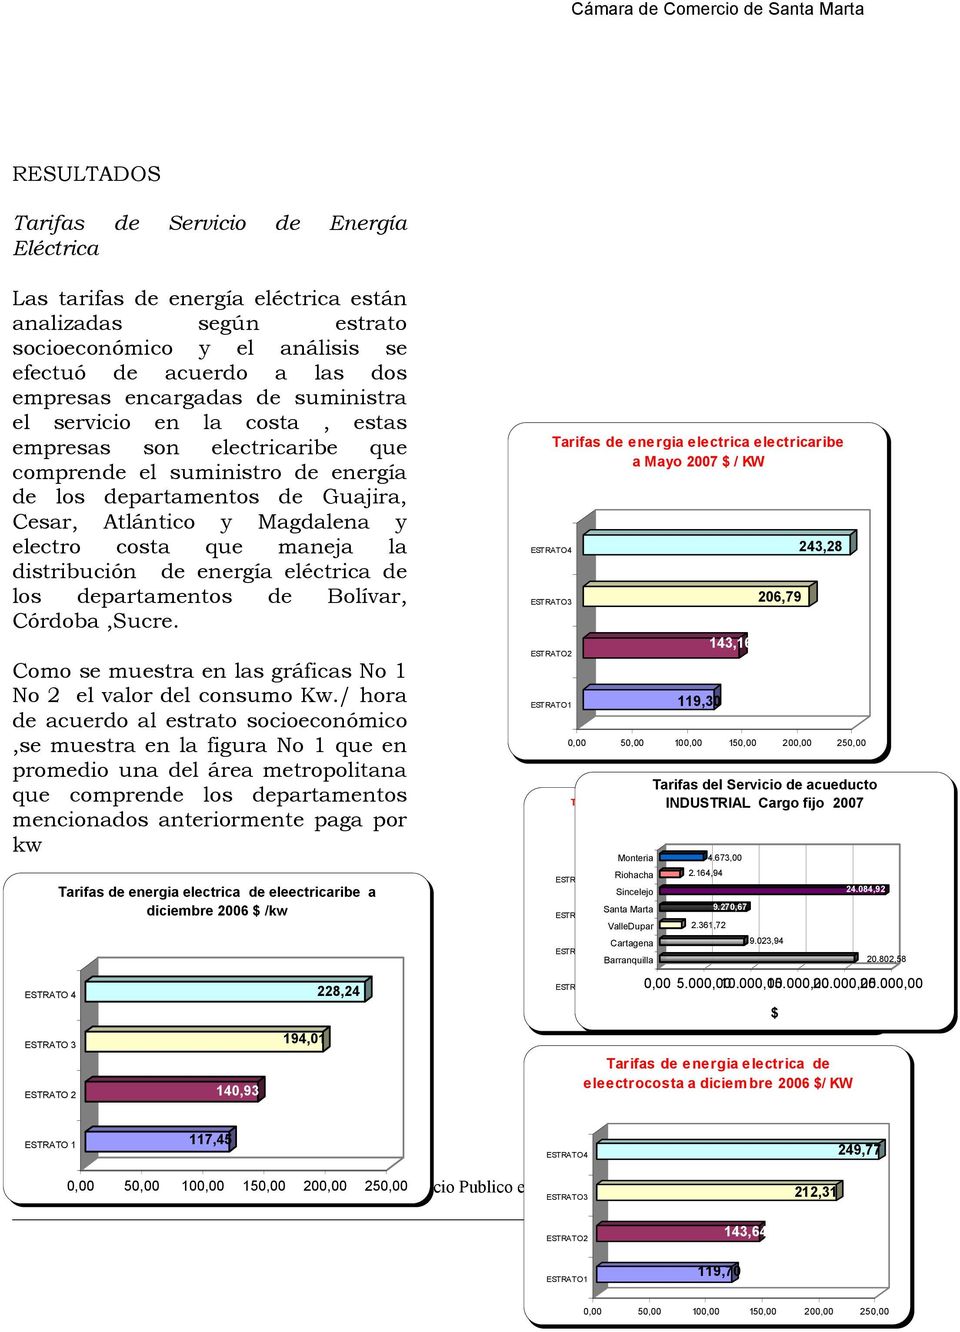 distribución de energía eléctrica de los departamentos de Bolívar, Córdoba,Sucre. Como se muestra en las gráficas No 1 No 2 el valor del consumo Kw.